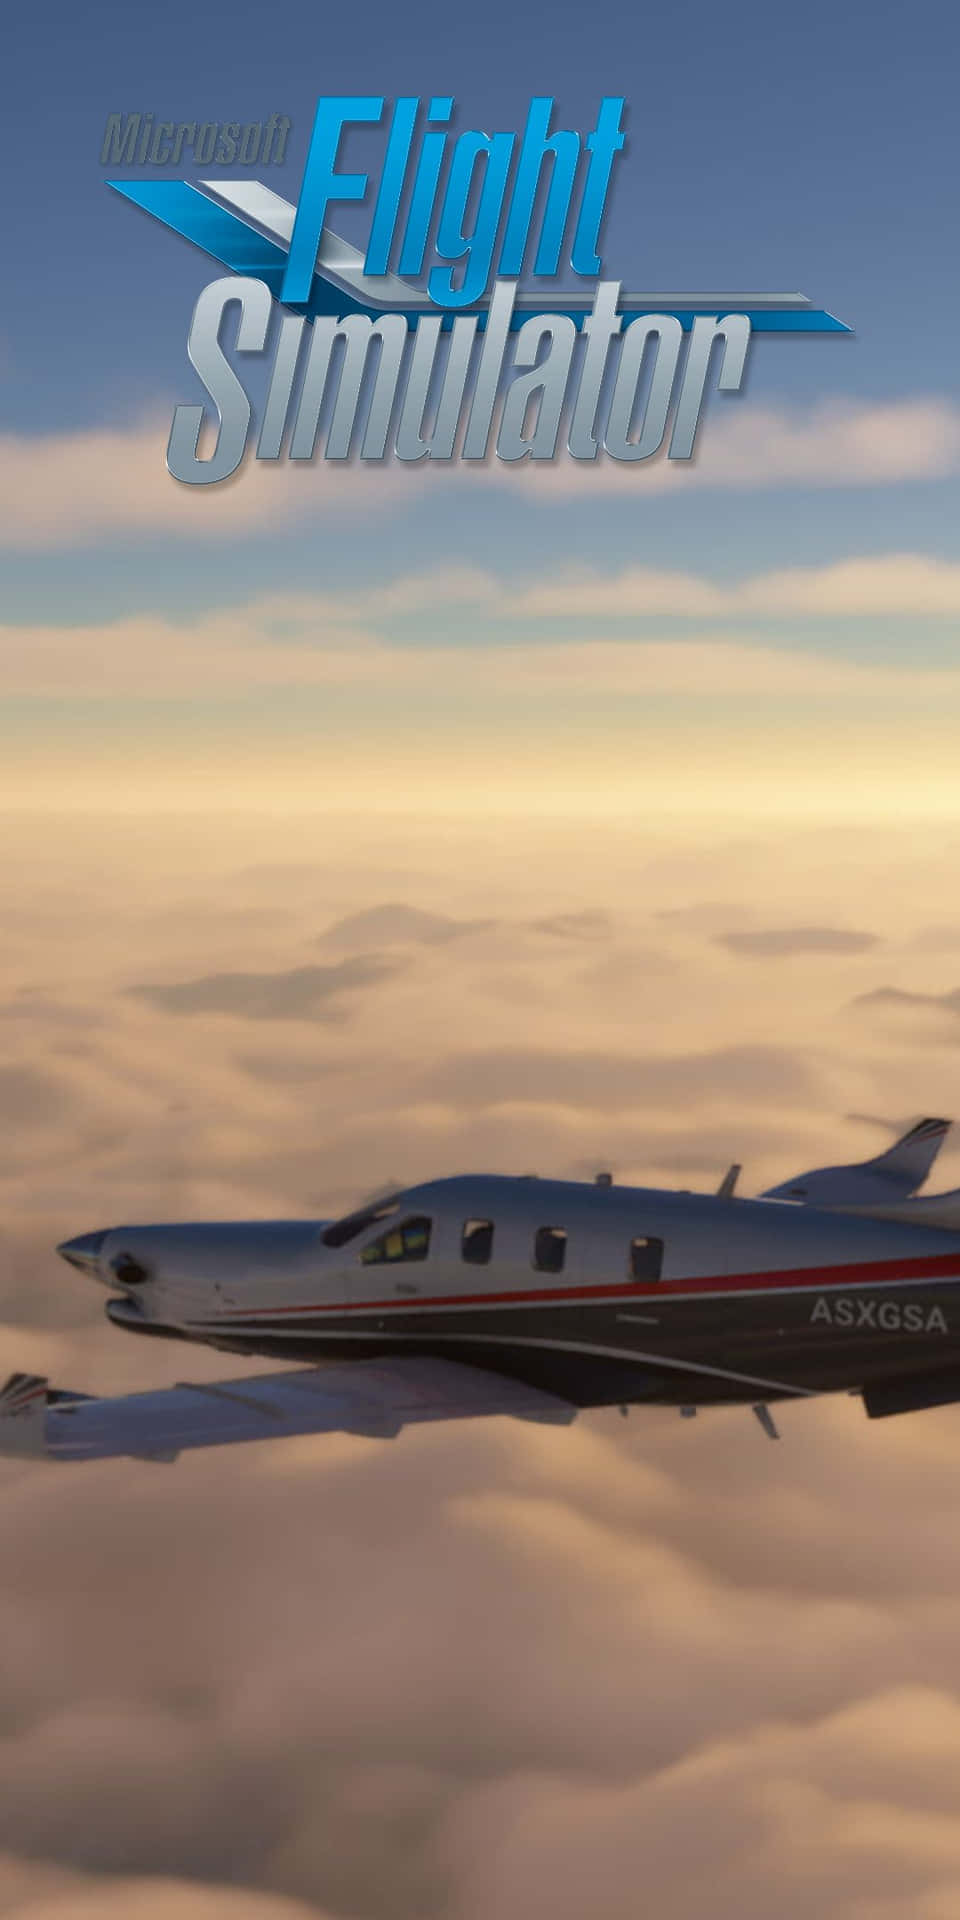 Immaginemicrosoft Flight Simulator: Portare Il Pixel 3 Tra Le Nuvole.